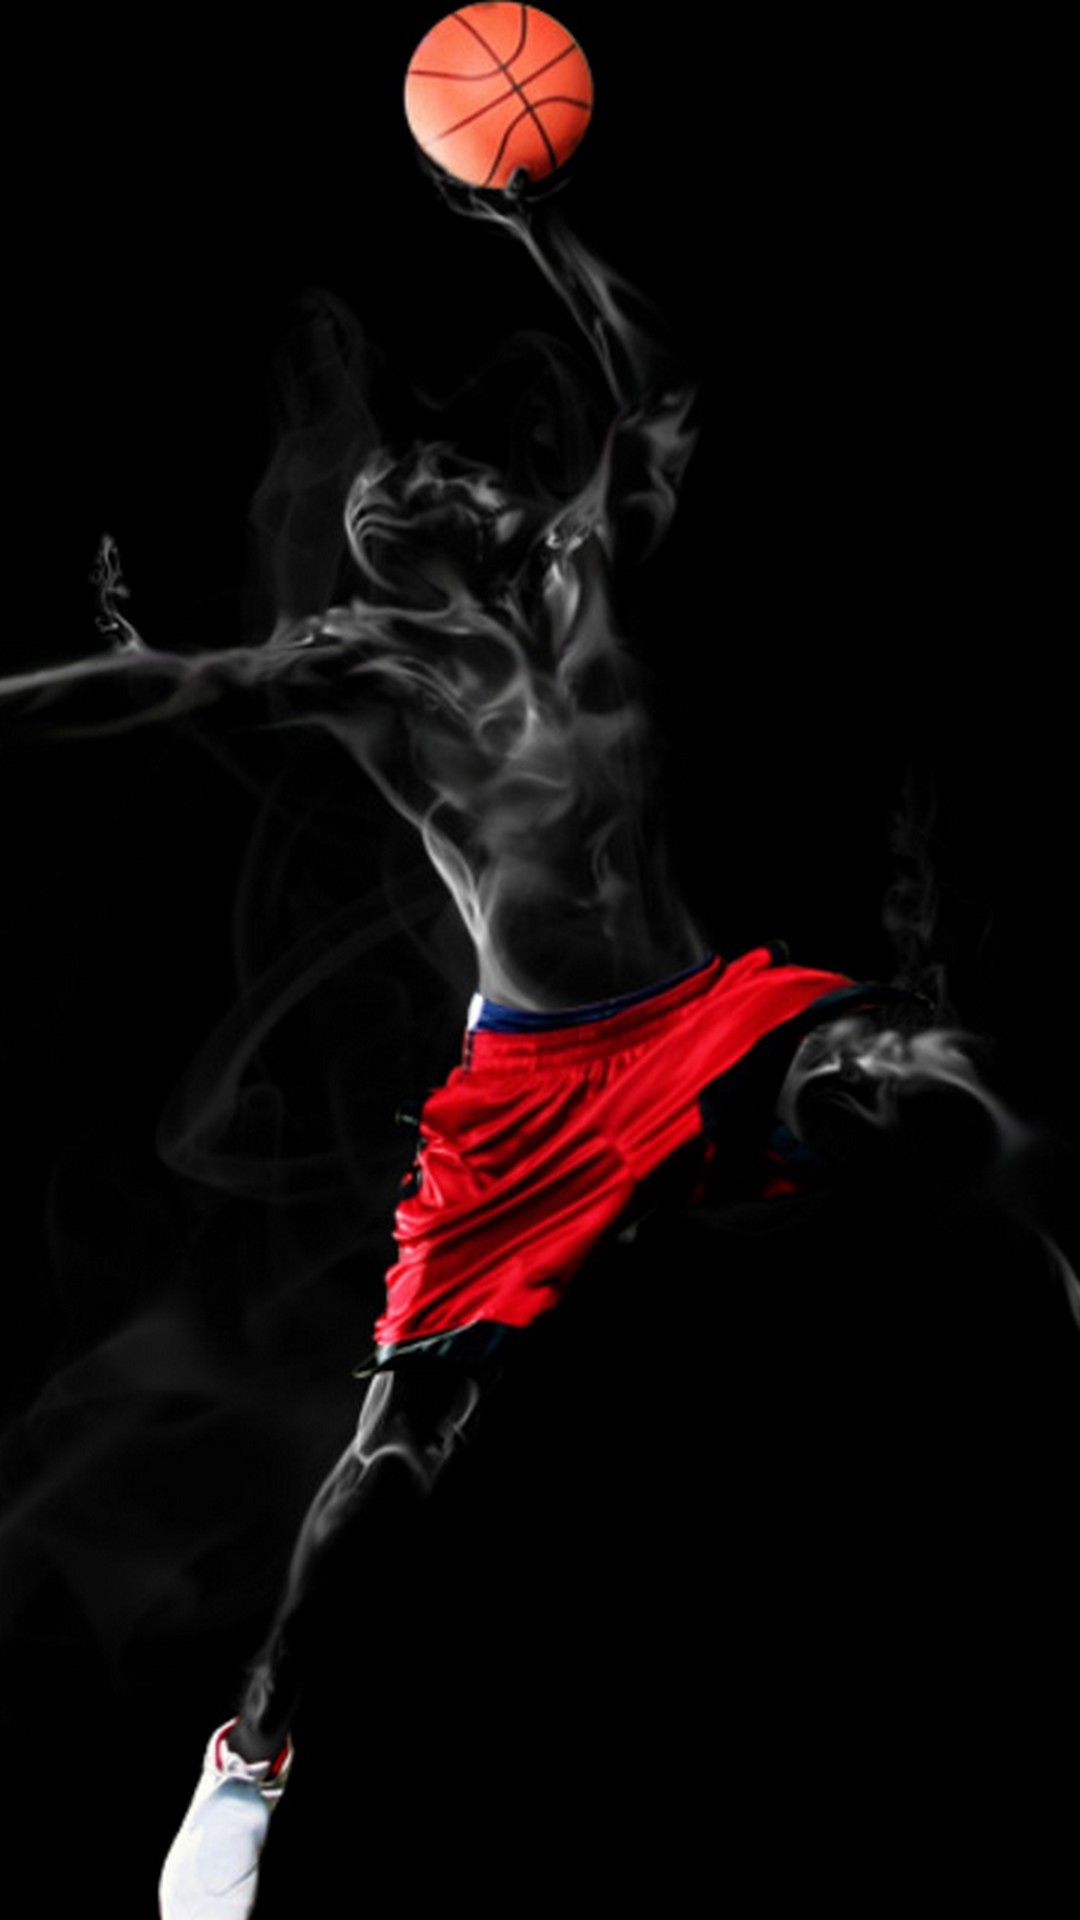 fondos de pantalla de baloncesto,rojo,oscuridad,fotografía,fumar